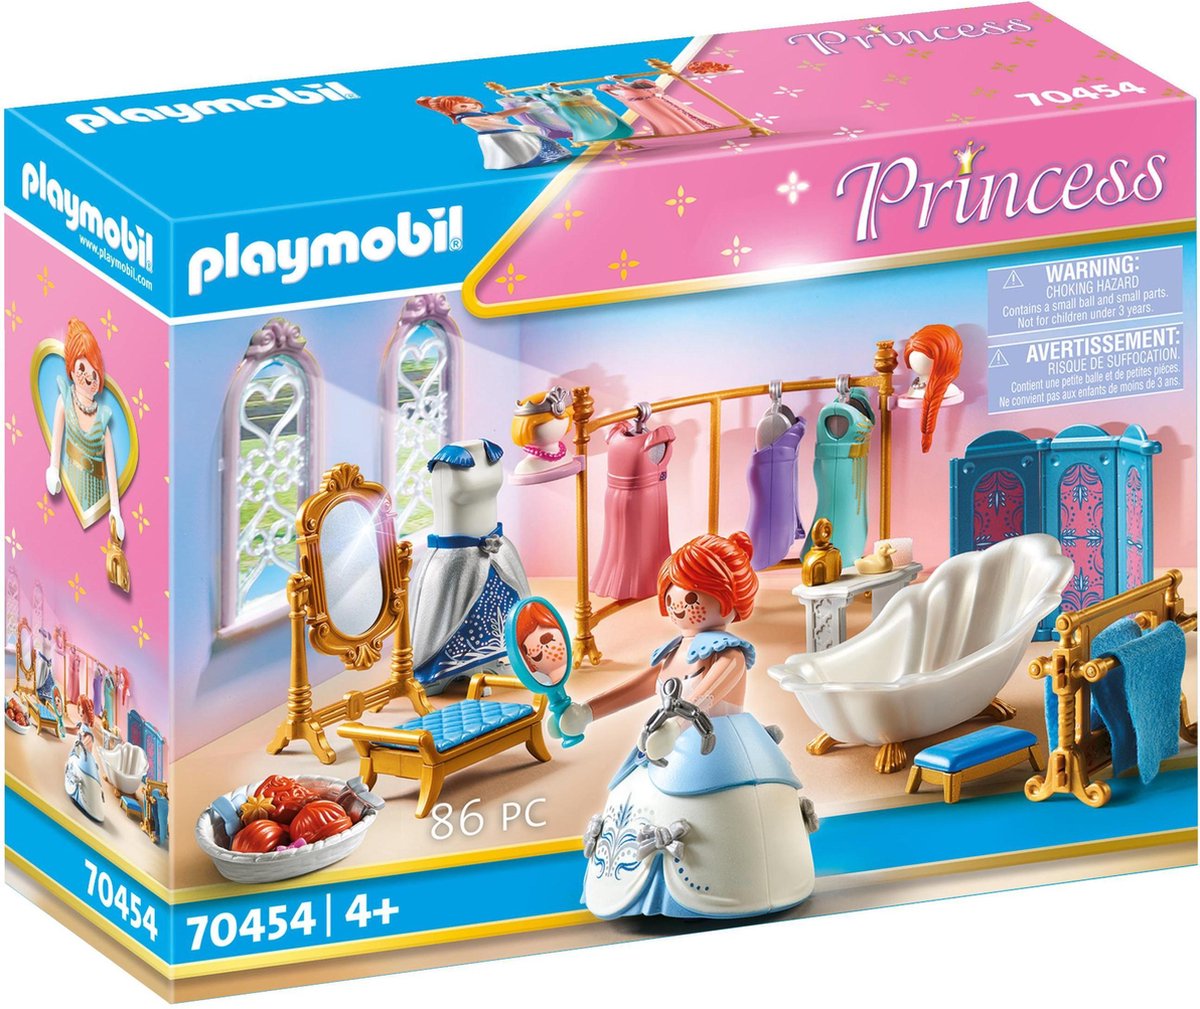 PLAYMOBIL Princess Kleedkamer - 70454 - PLAYMOBIL